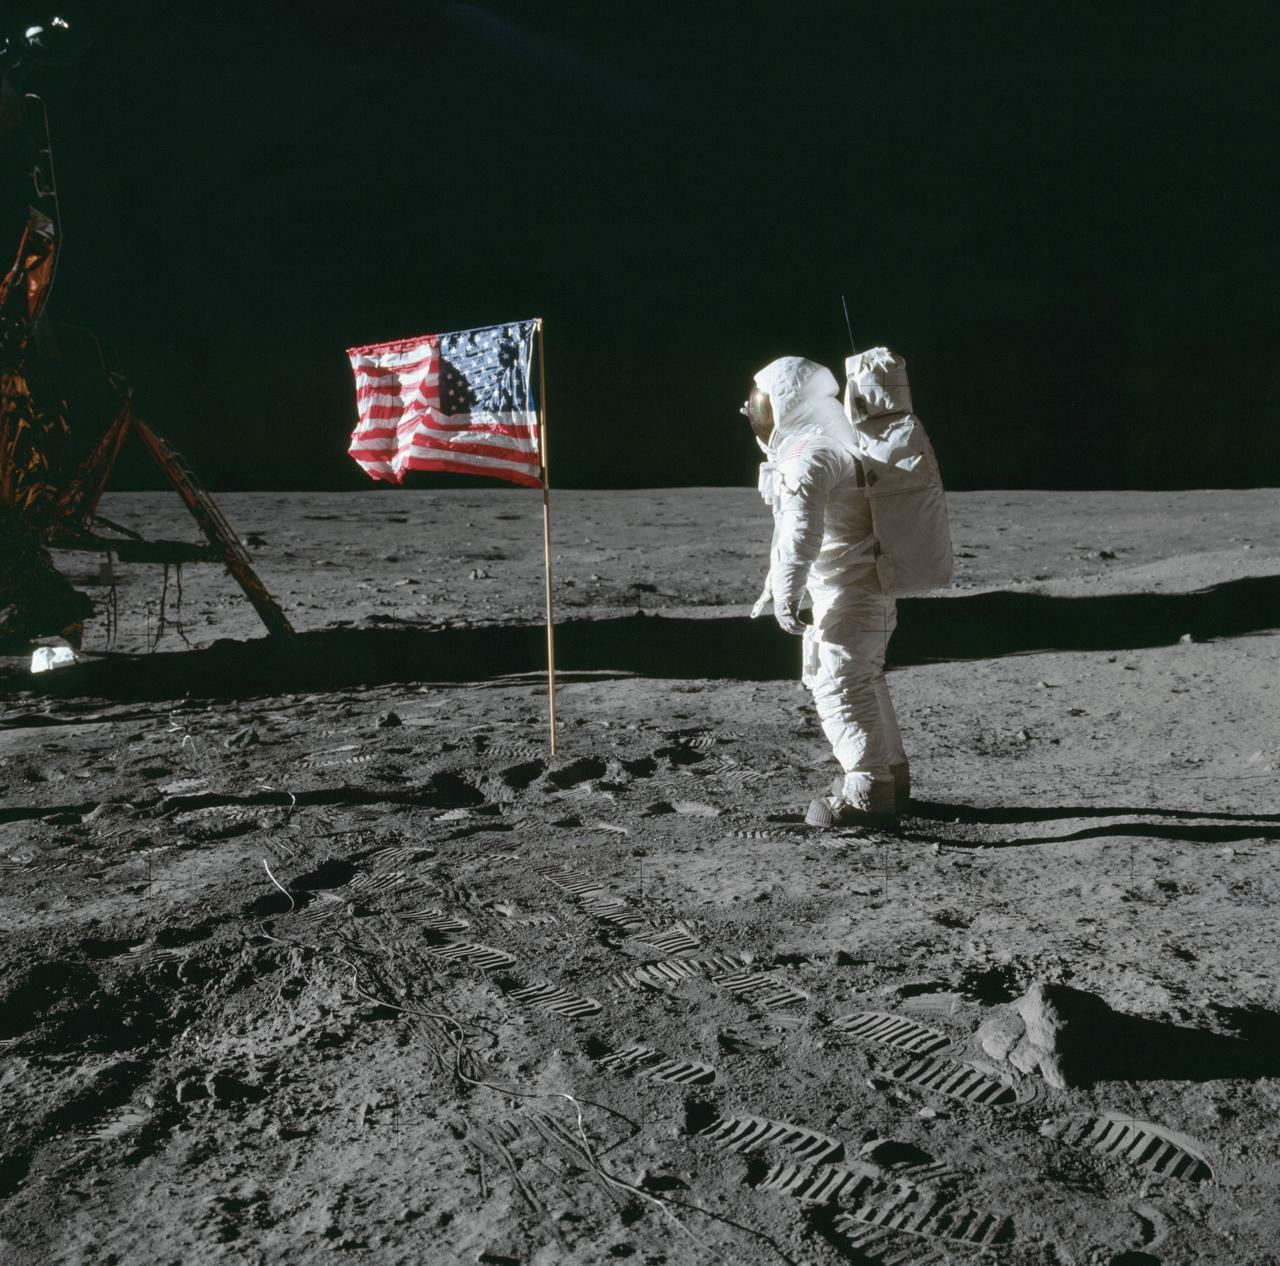 Apollo 11 Mission image